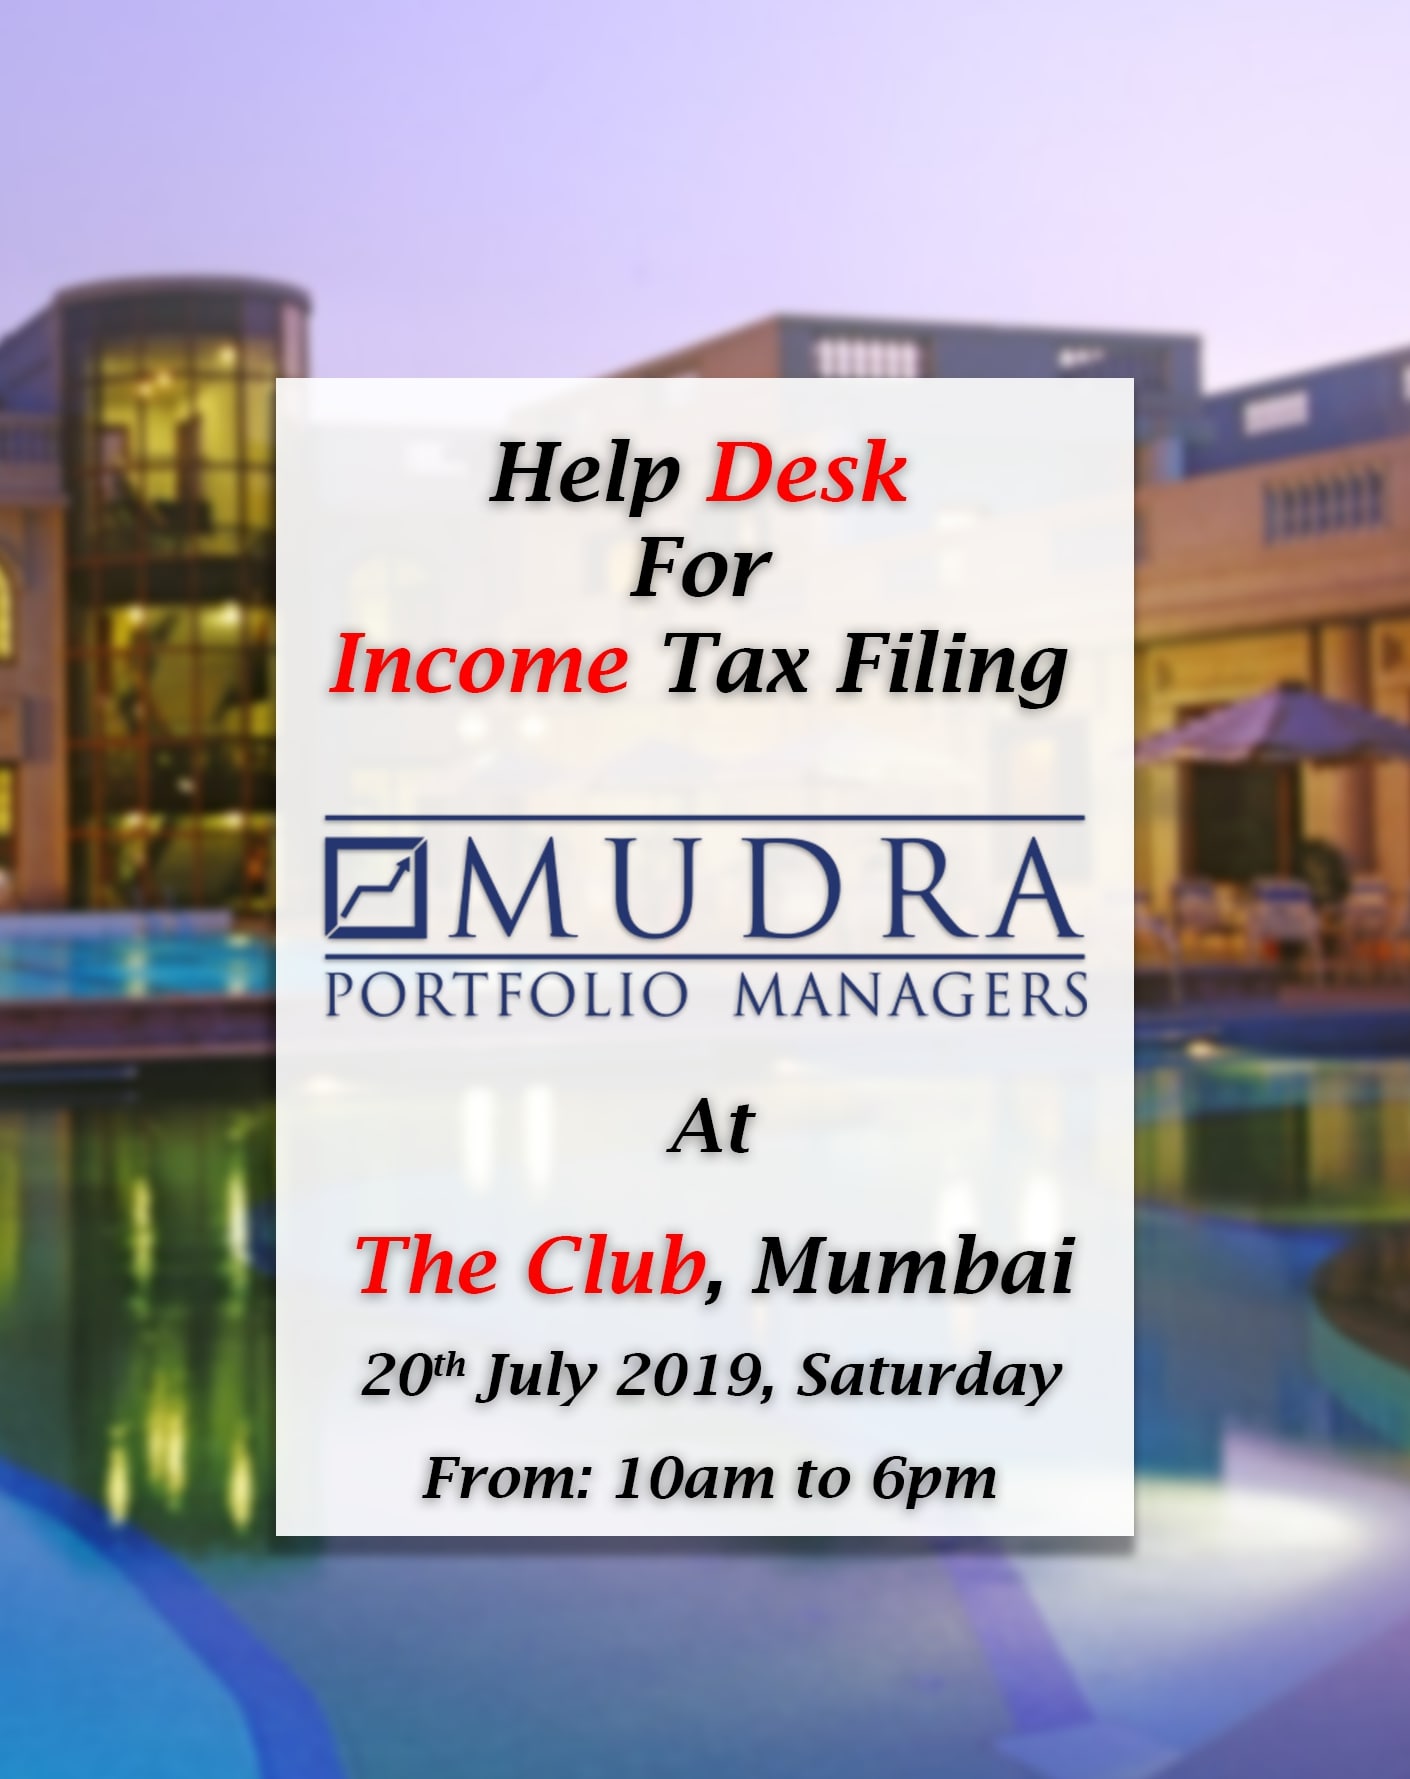 The Club, Mumbai